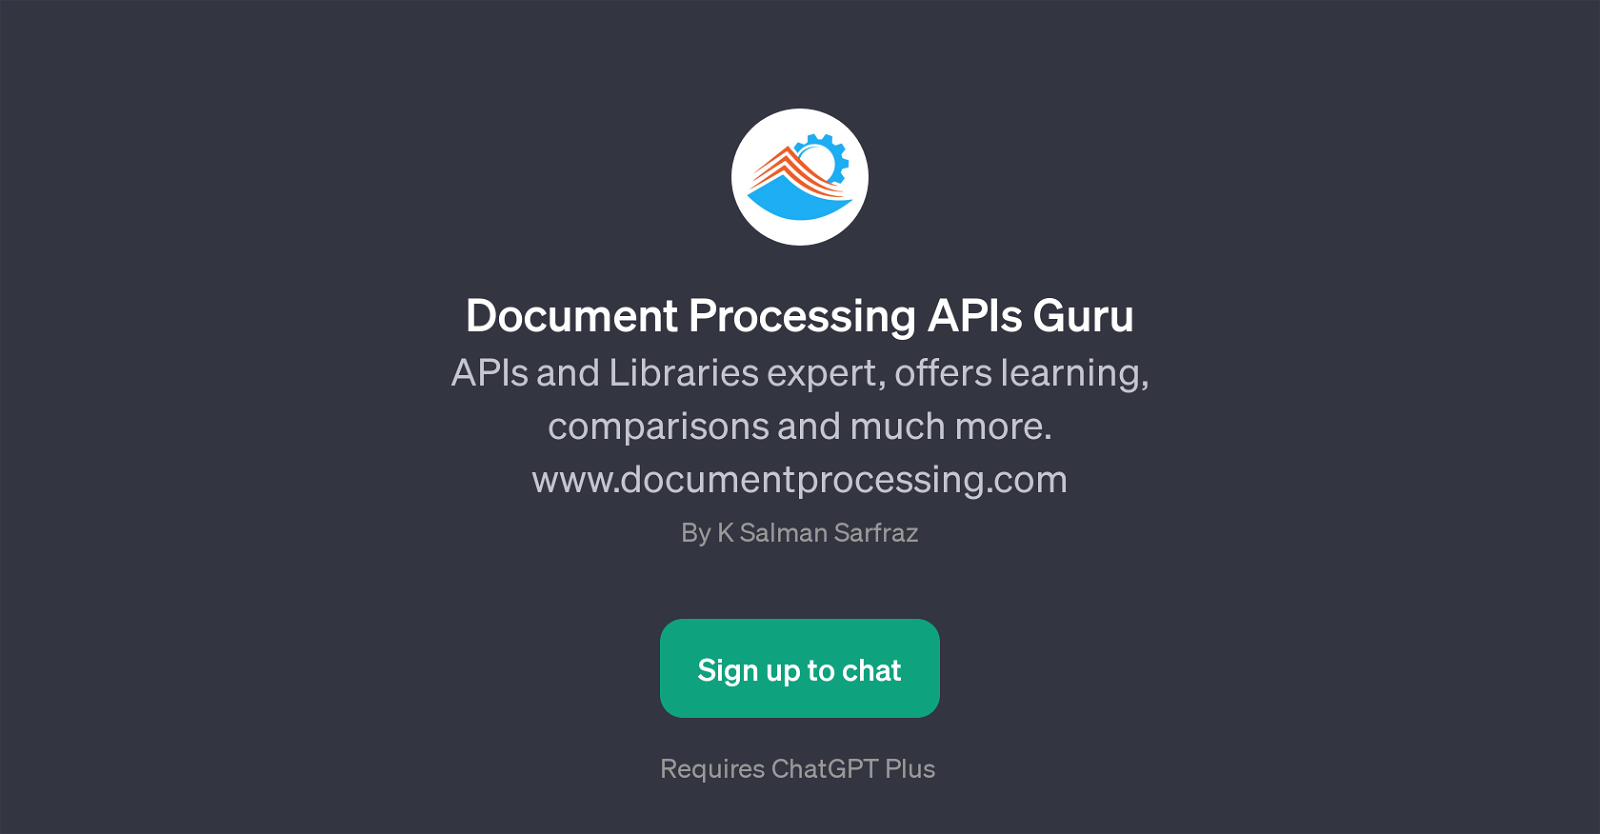 Document Processing APIs Guru website